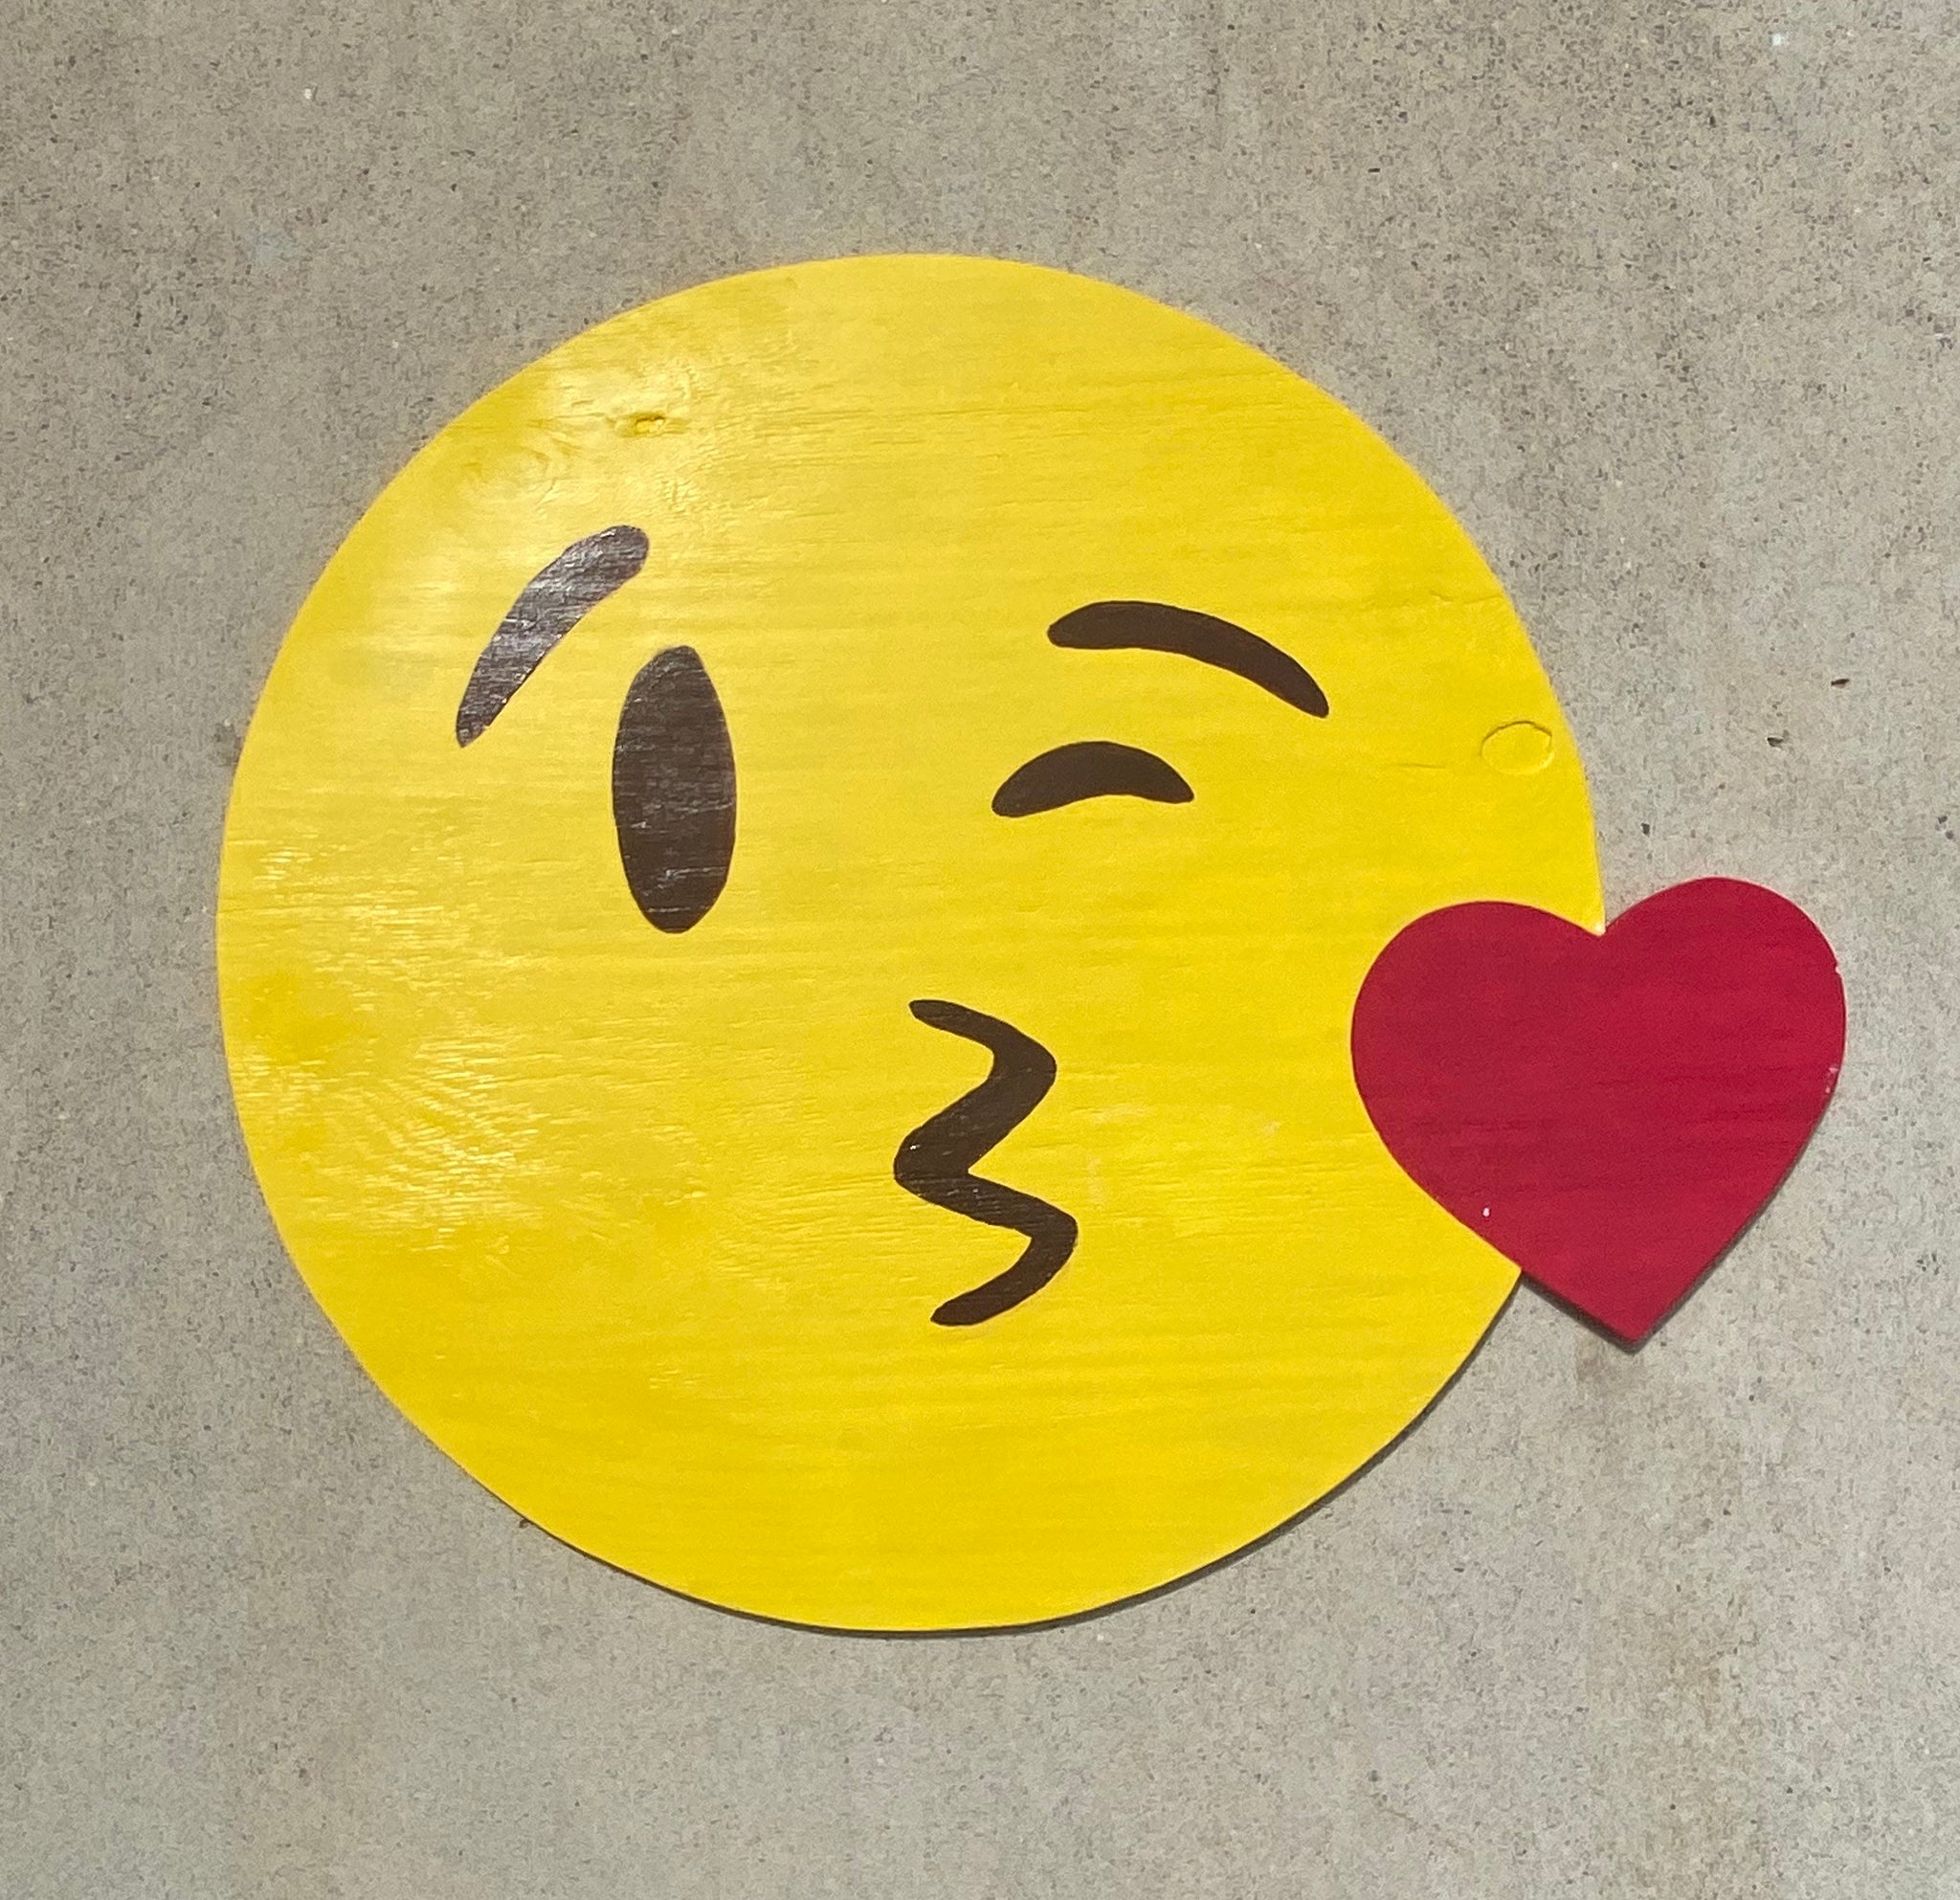 Kissing Emoji